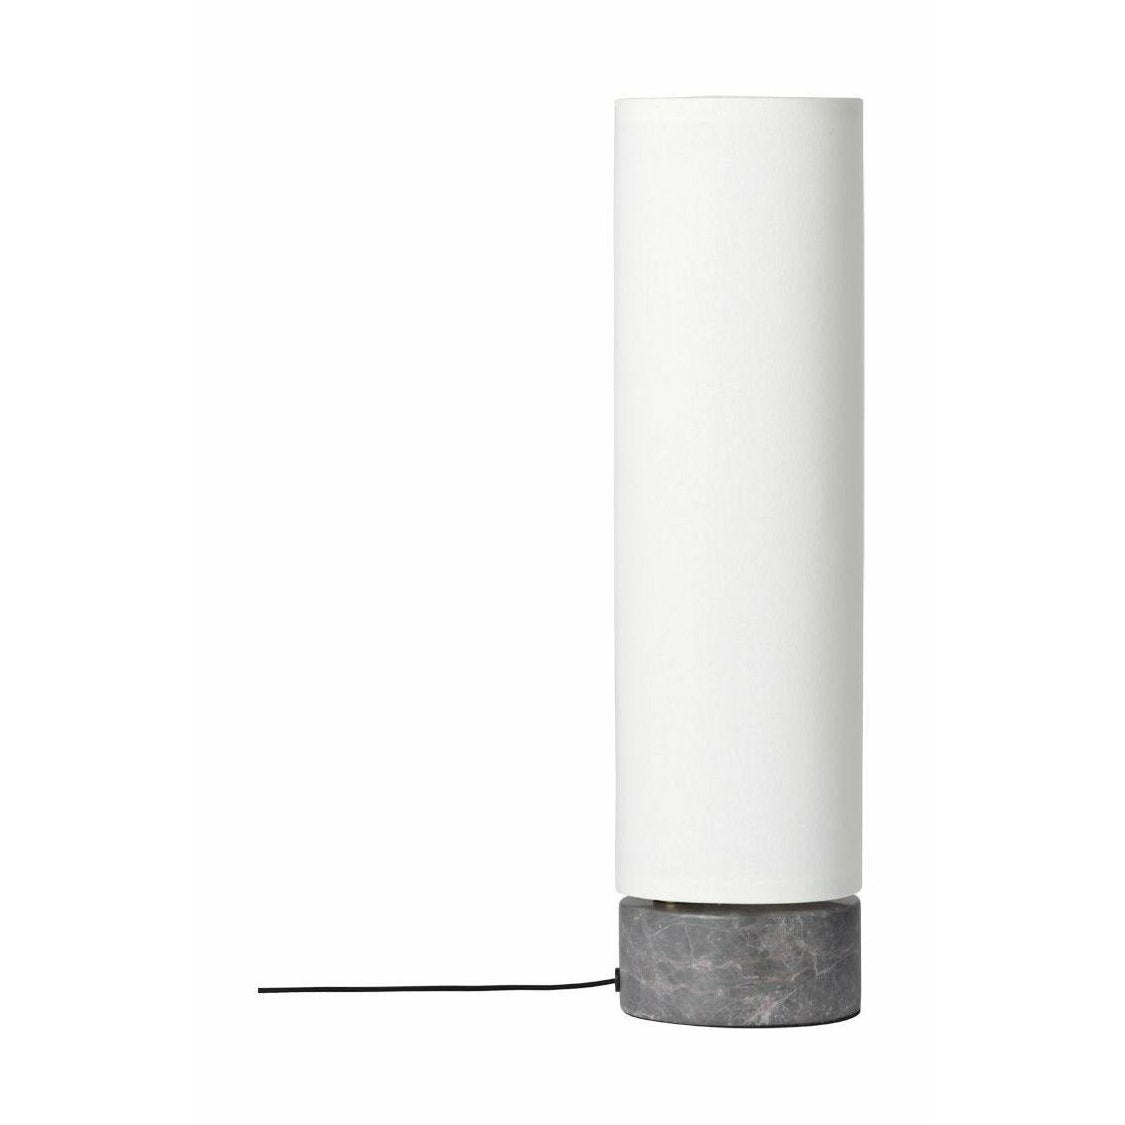 Lampe de table non liée Gubi Øx h 12x45, blanc